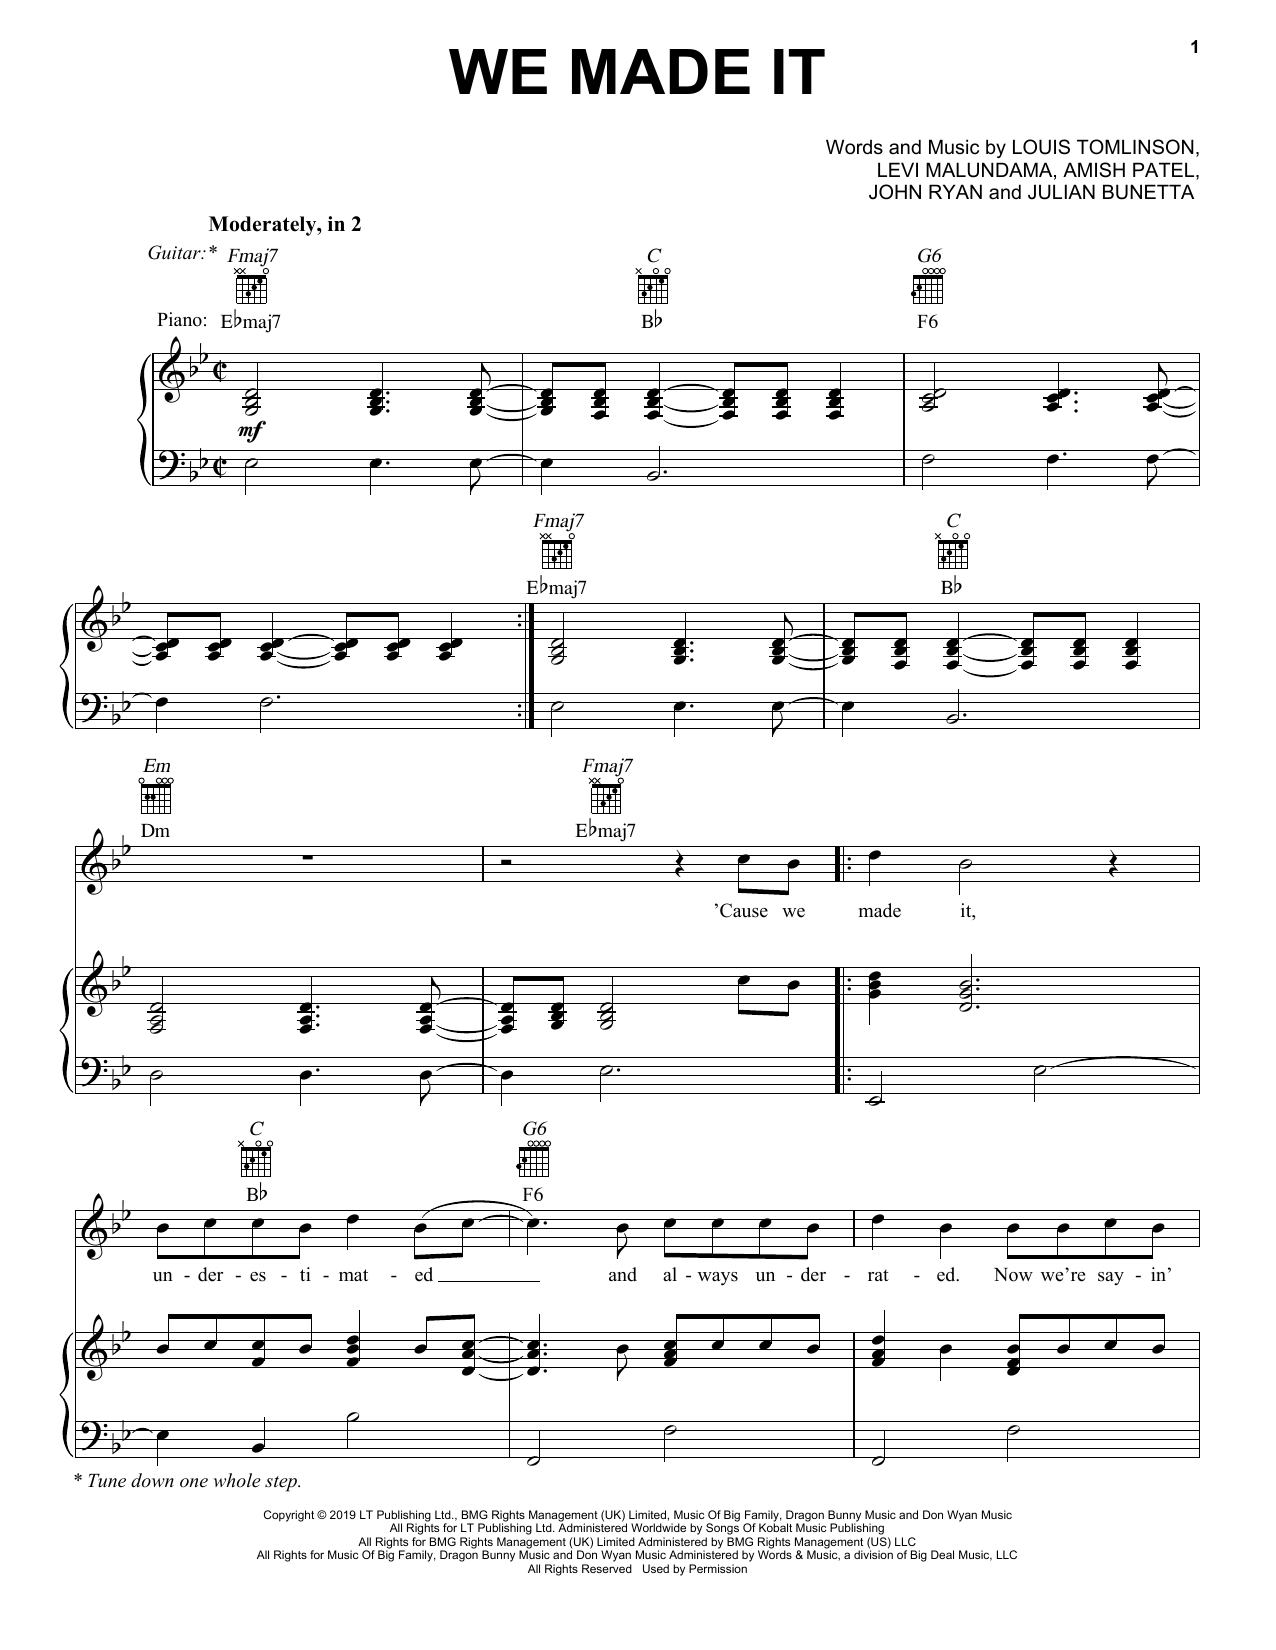 Louis Tomlinson We Made It Sheet Music Notes & Chords for Guitar Chords/Lyrics - Download or Print PDF